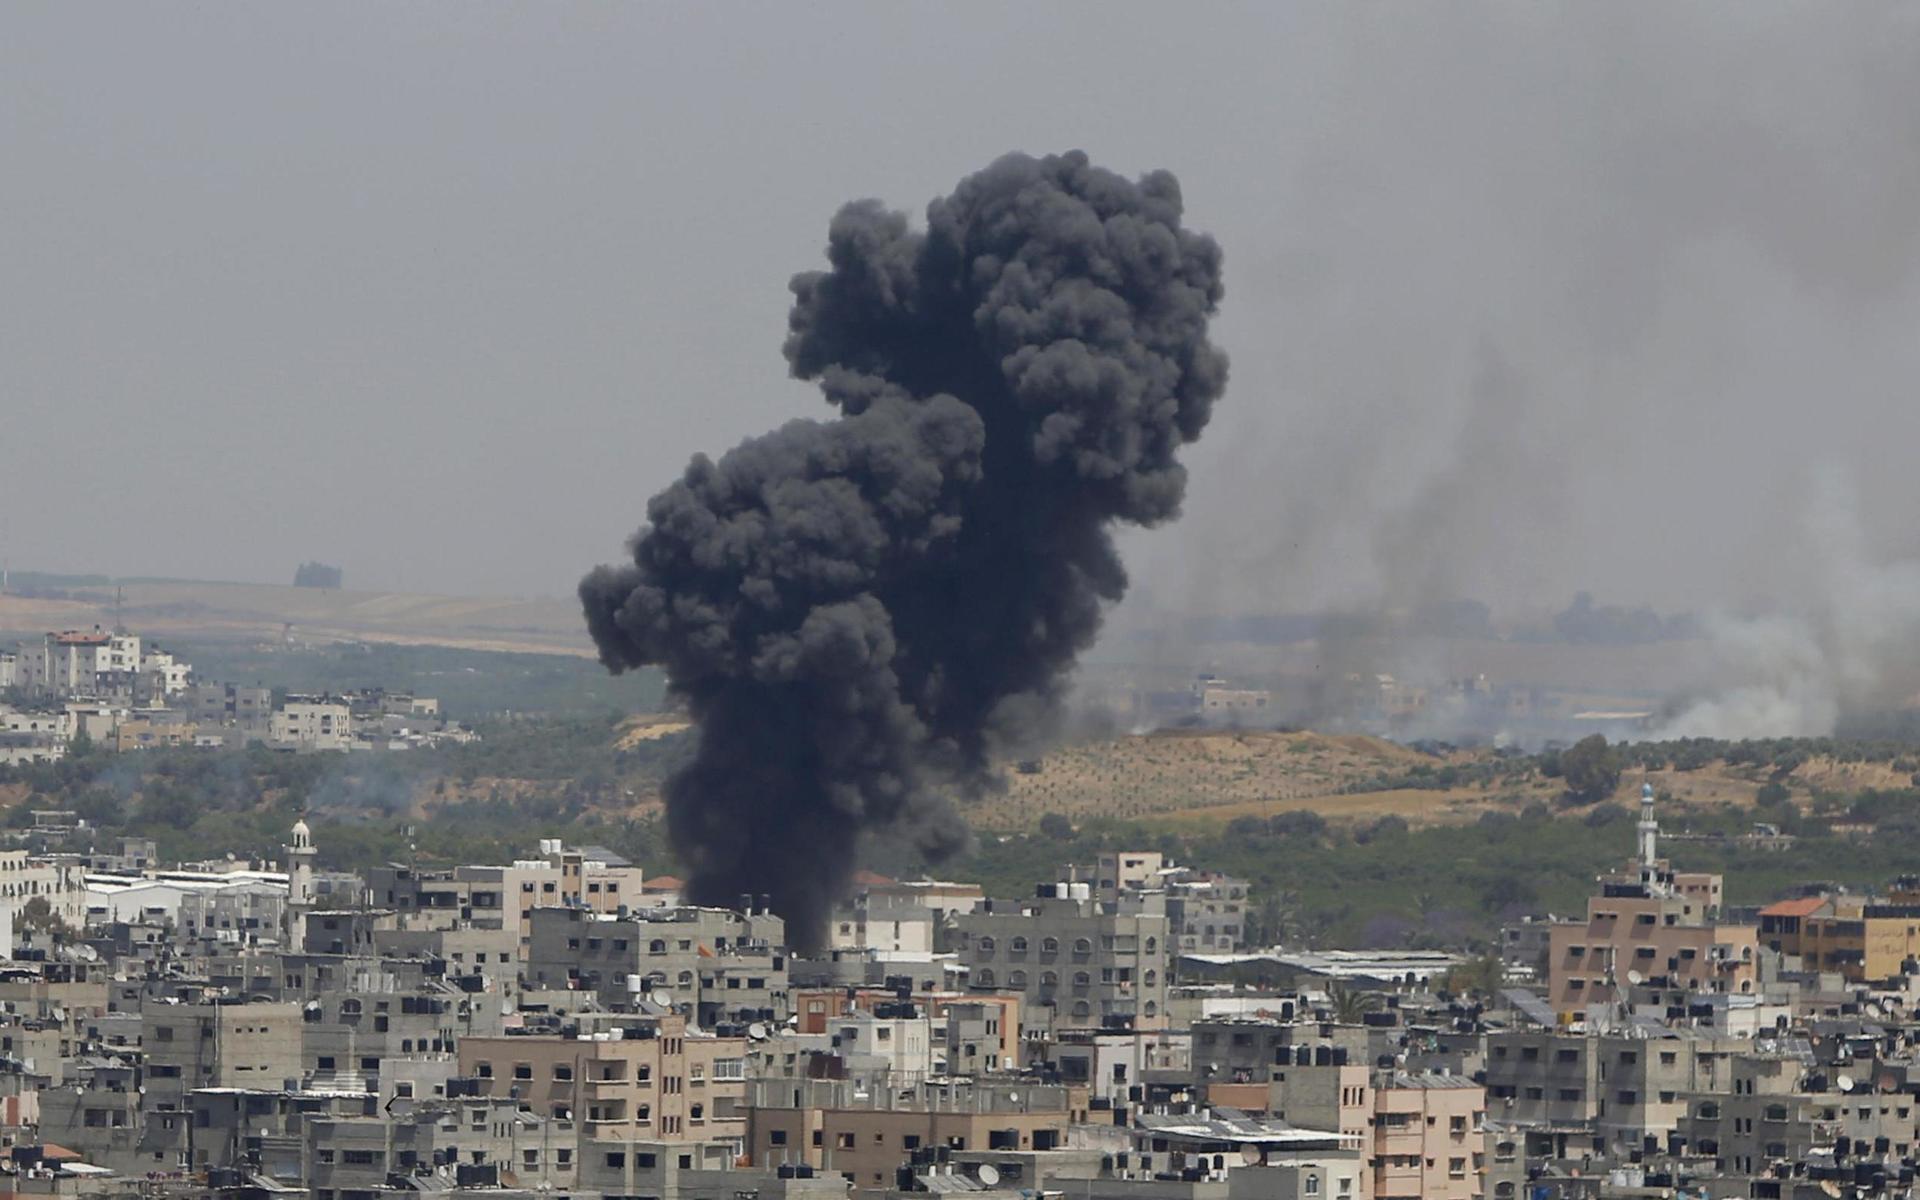 Israels svar på raketbeskjutningen bestod av flygangrepp mot olika mål i Gaza. Minst 26 personer ska ha mist livet i attackerna. På onsdagsmorgonen hade siffran över döda stigit till totalt 40 personer varav fem barn.